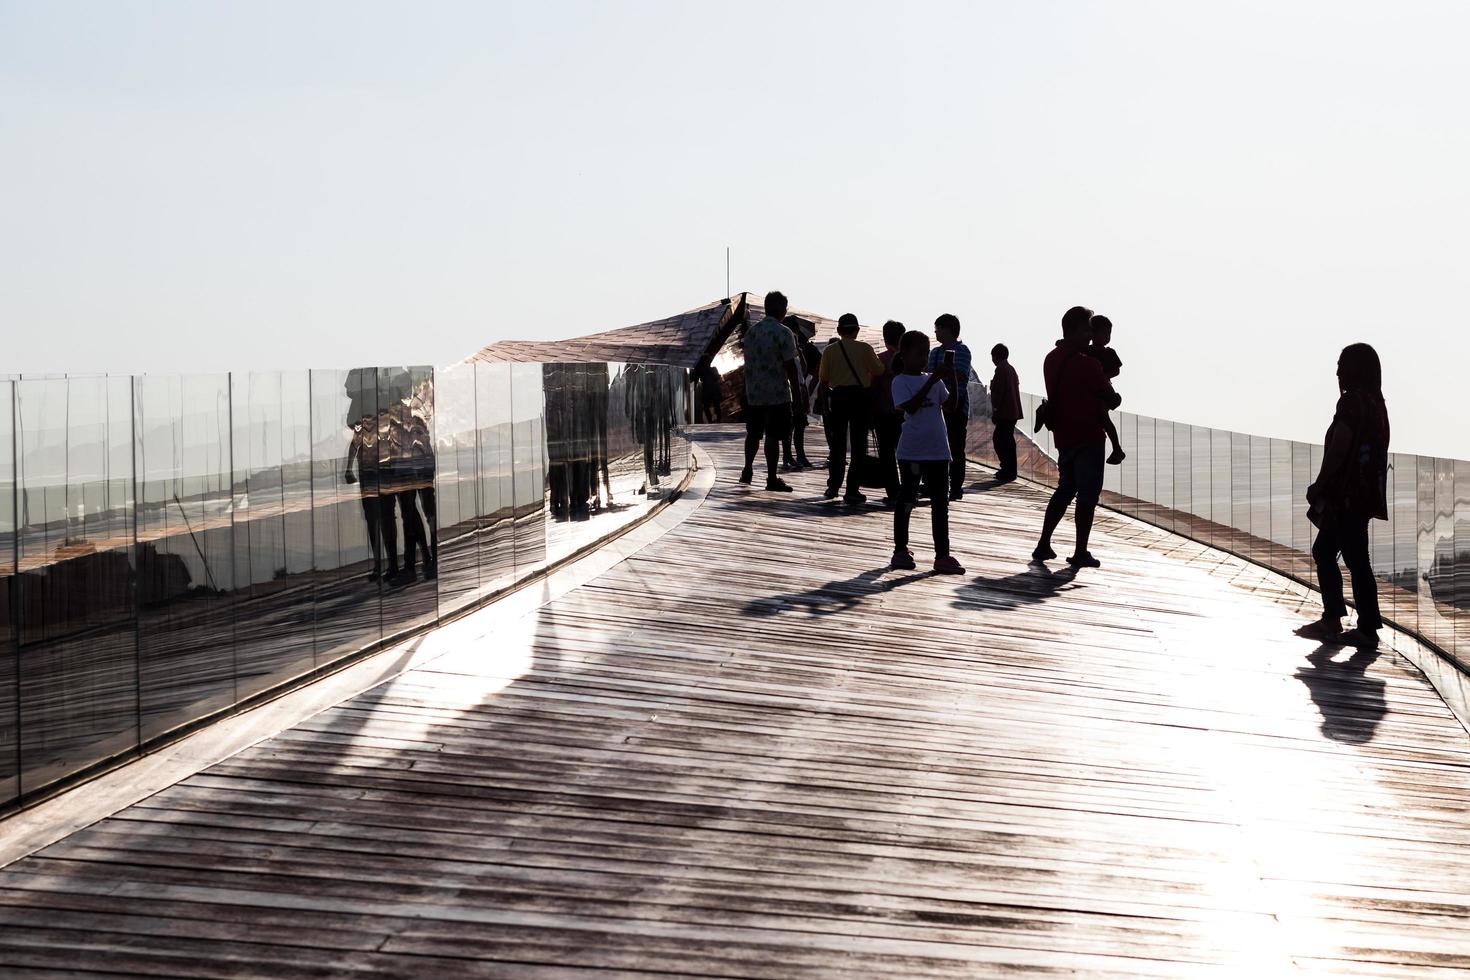 silueta de personas en el viejo puente de madera. foto